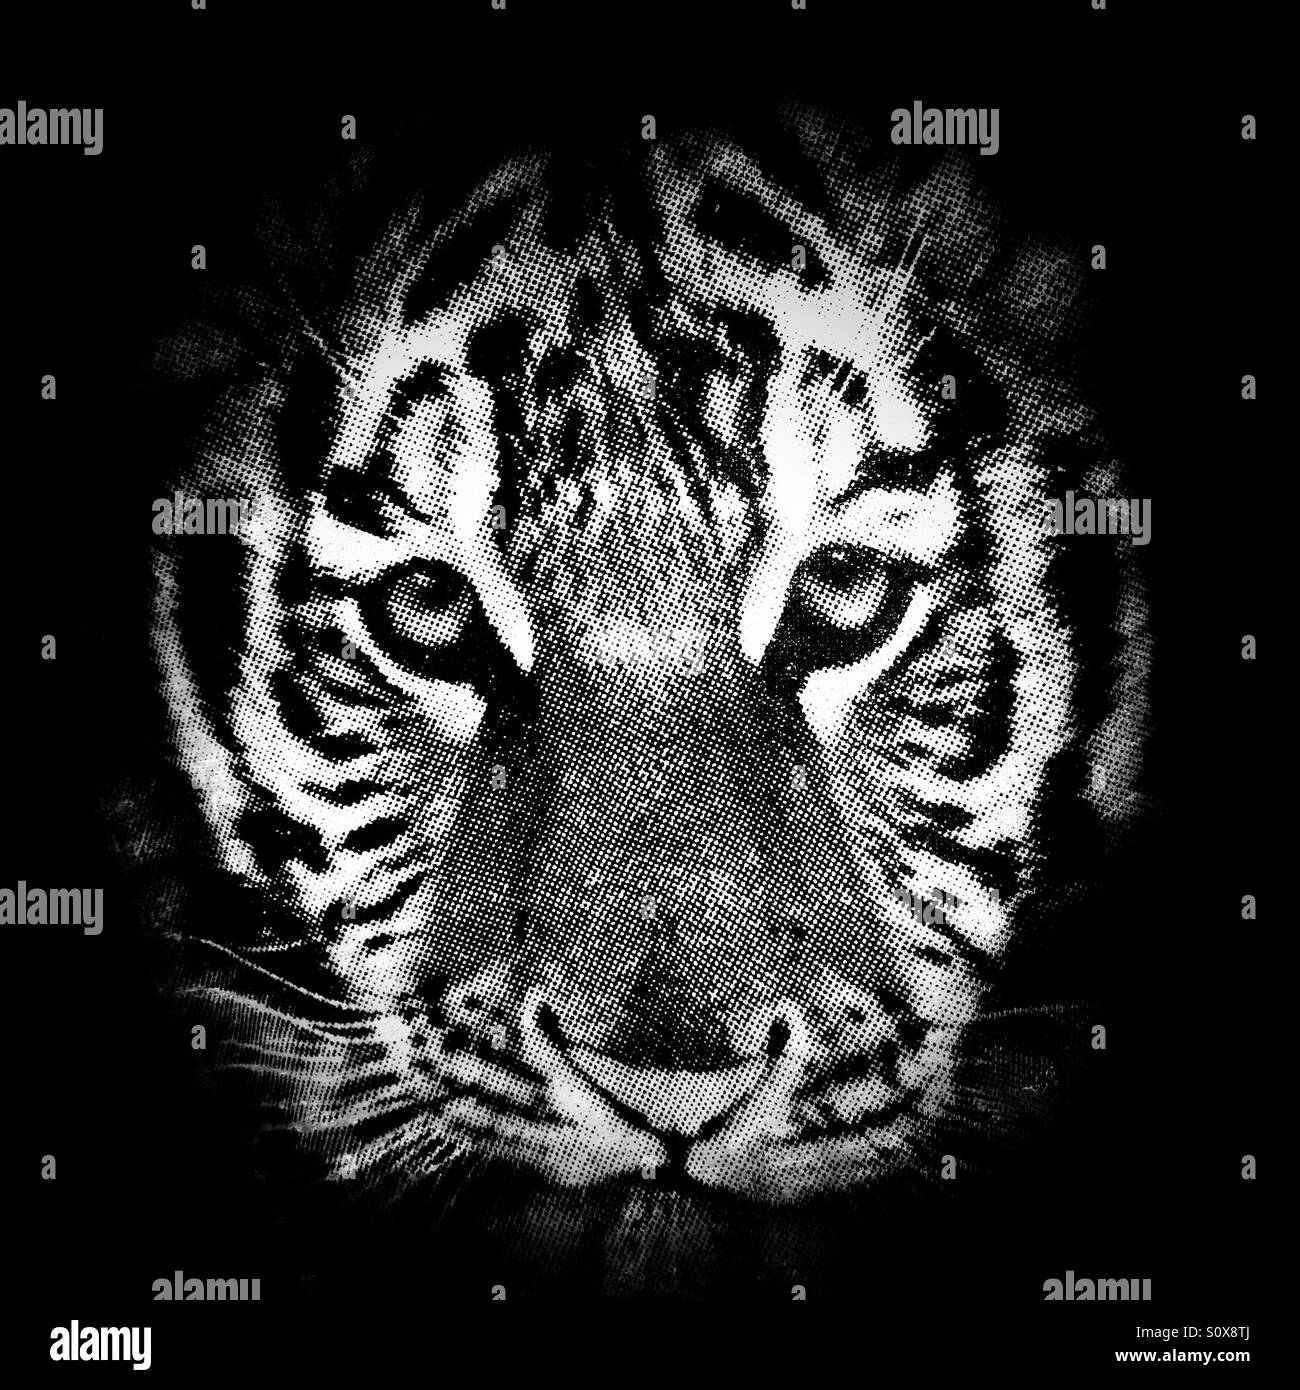 T-shirt tiger face print Stock Photo - Alamy